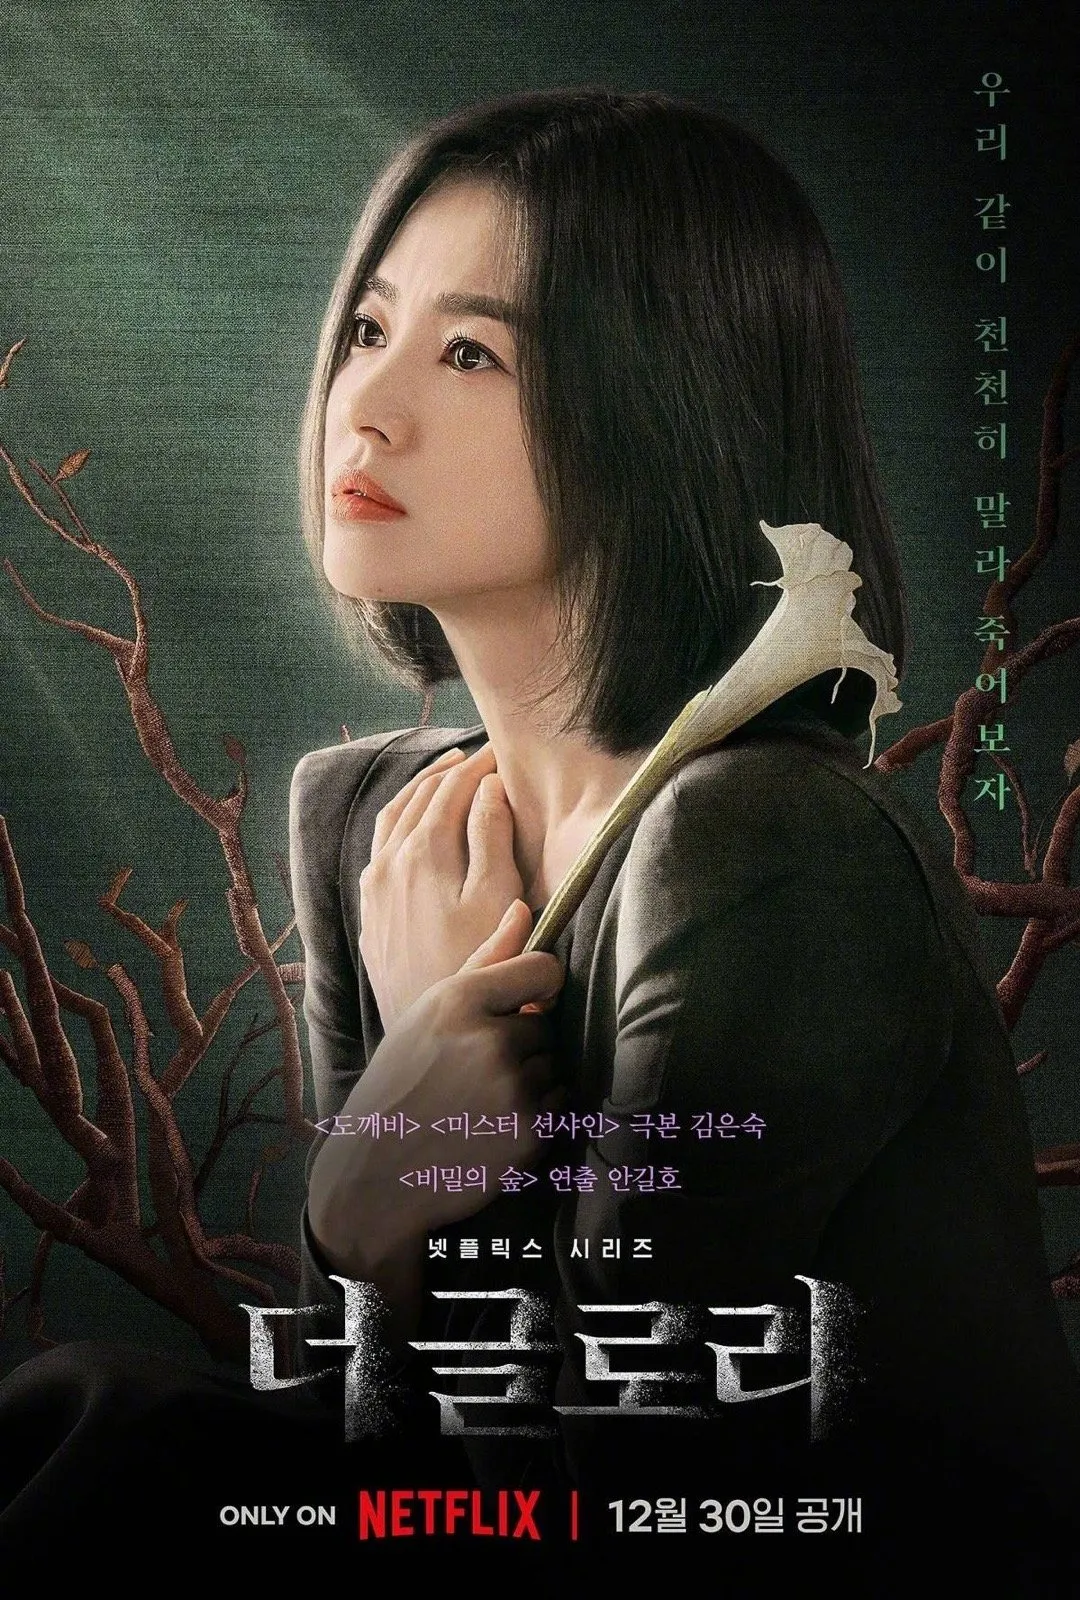 Hye-kyo Song's new drama 'The Glory' releases the official trailer, full of heroine revenge dark style | FMV6